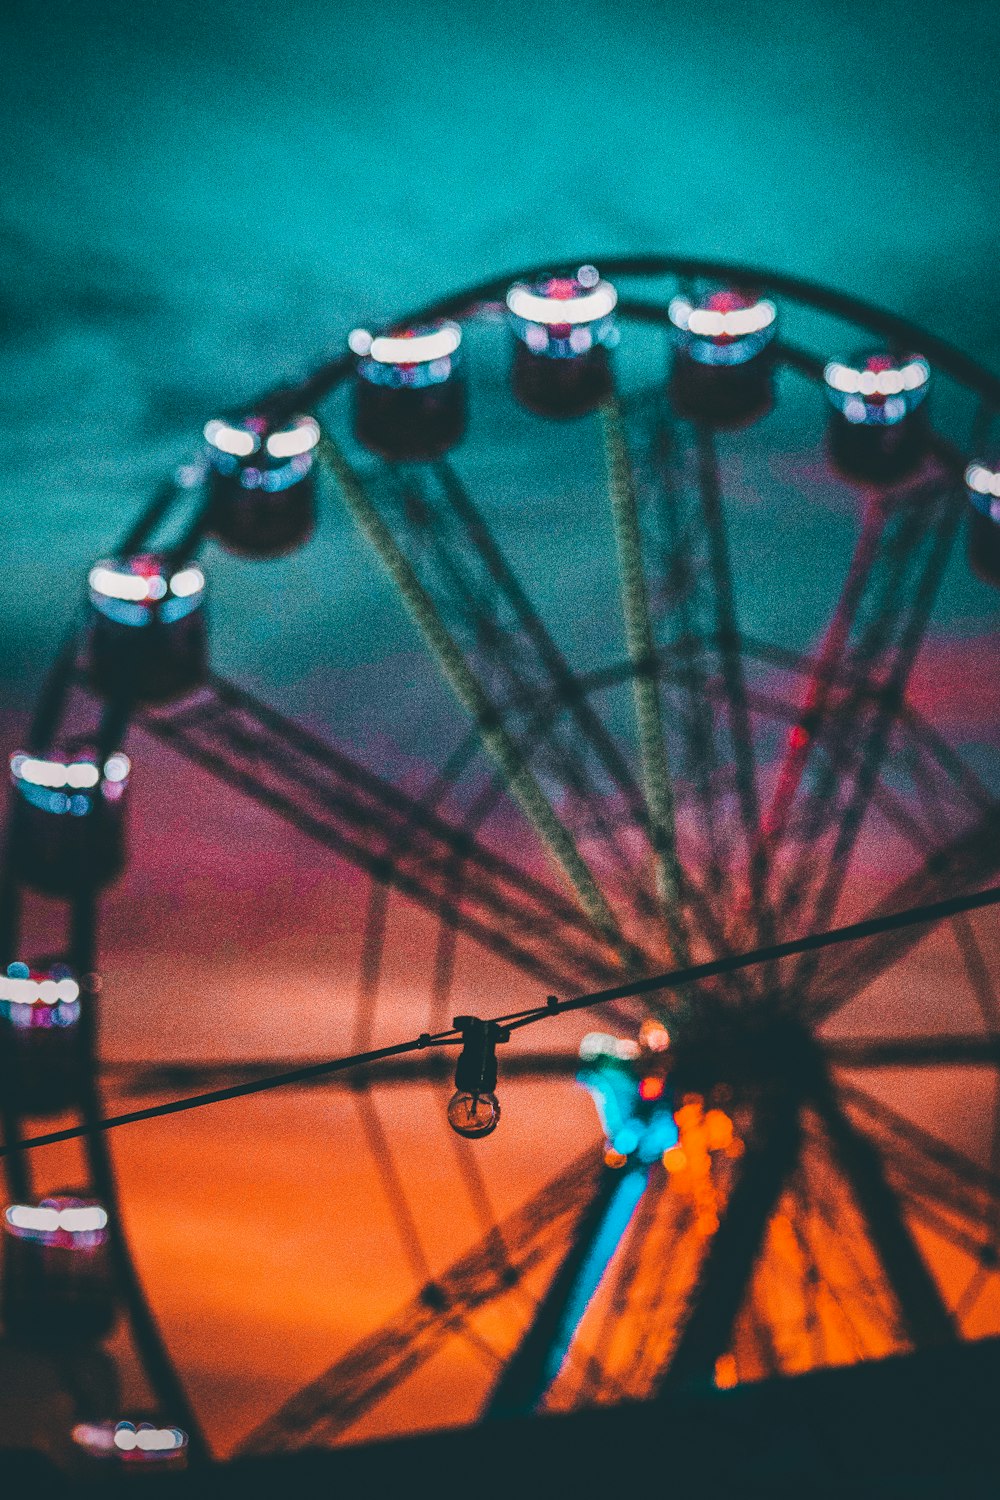 uma roda gigante com um céu colorido no fundo